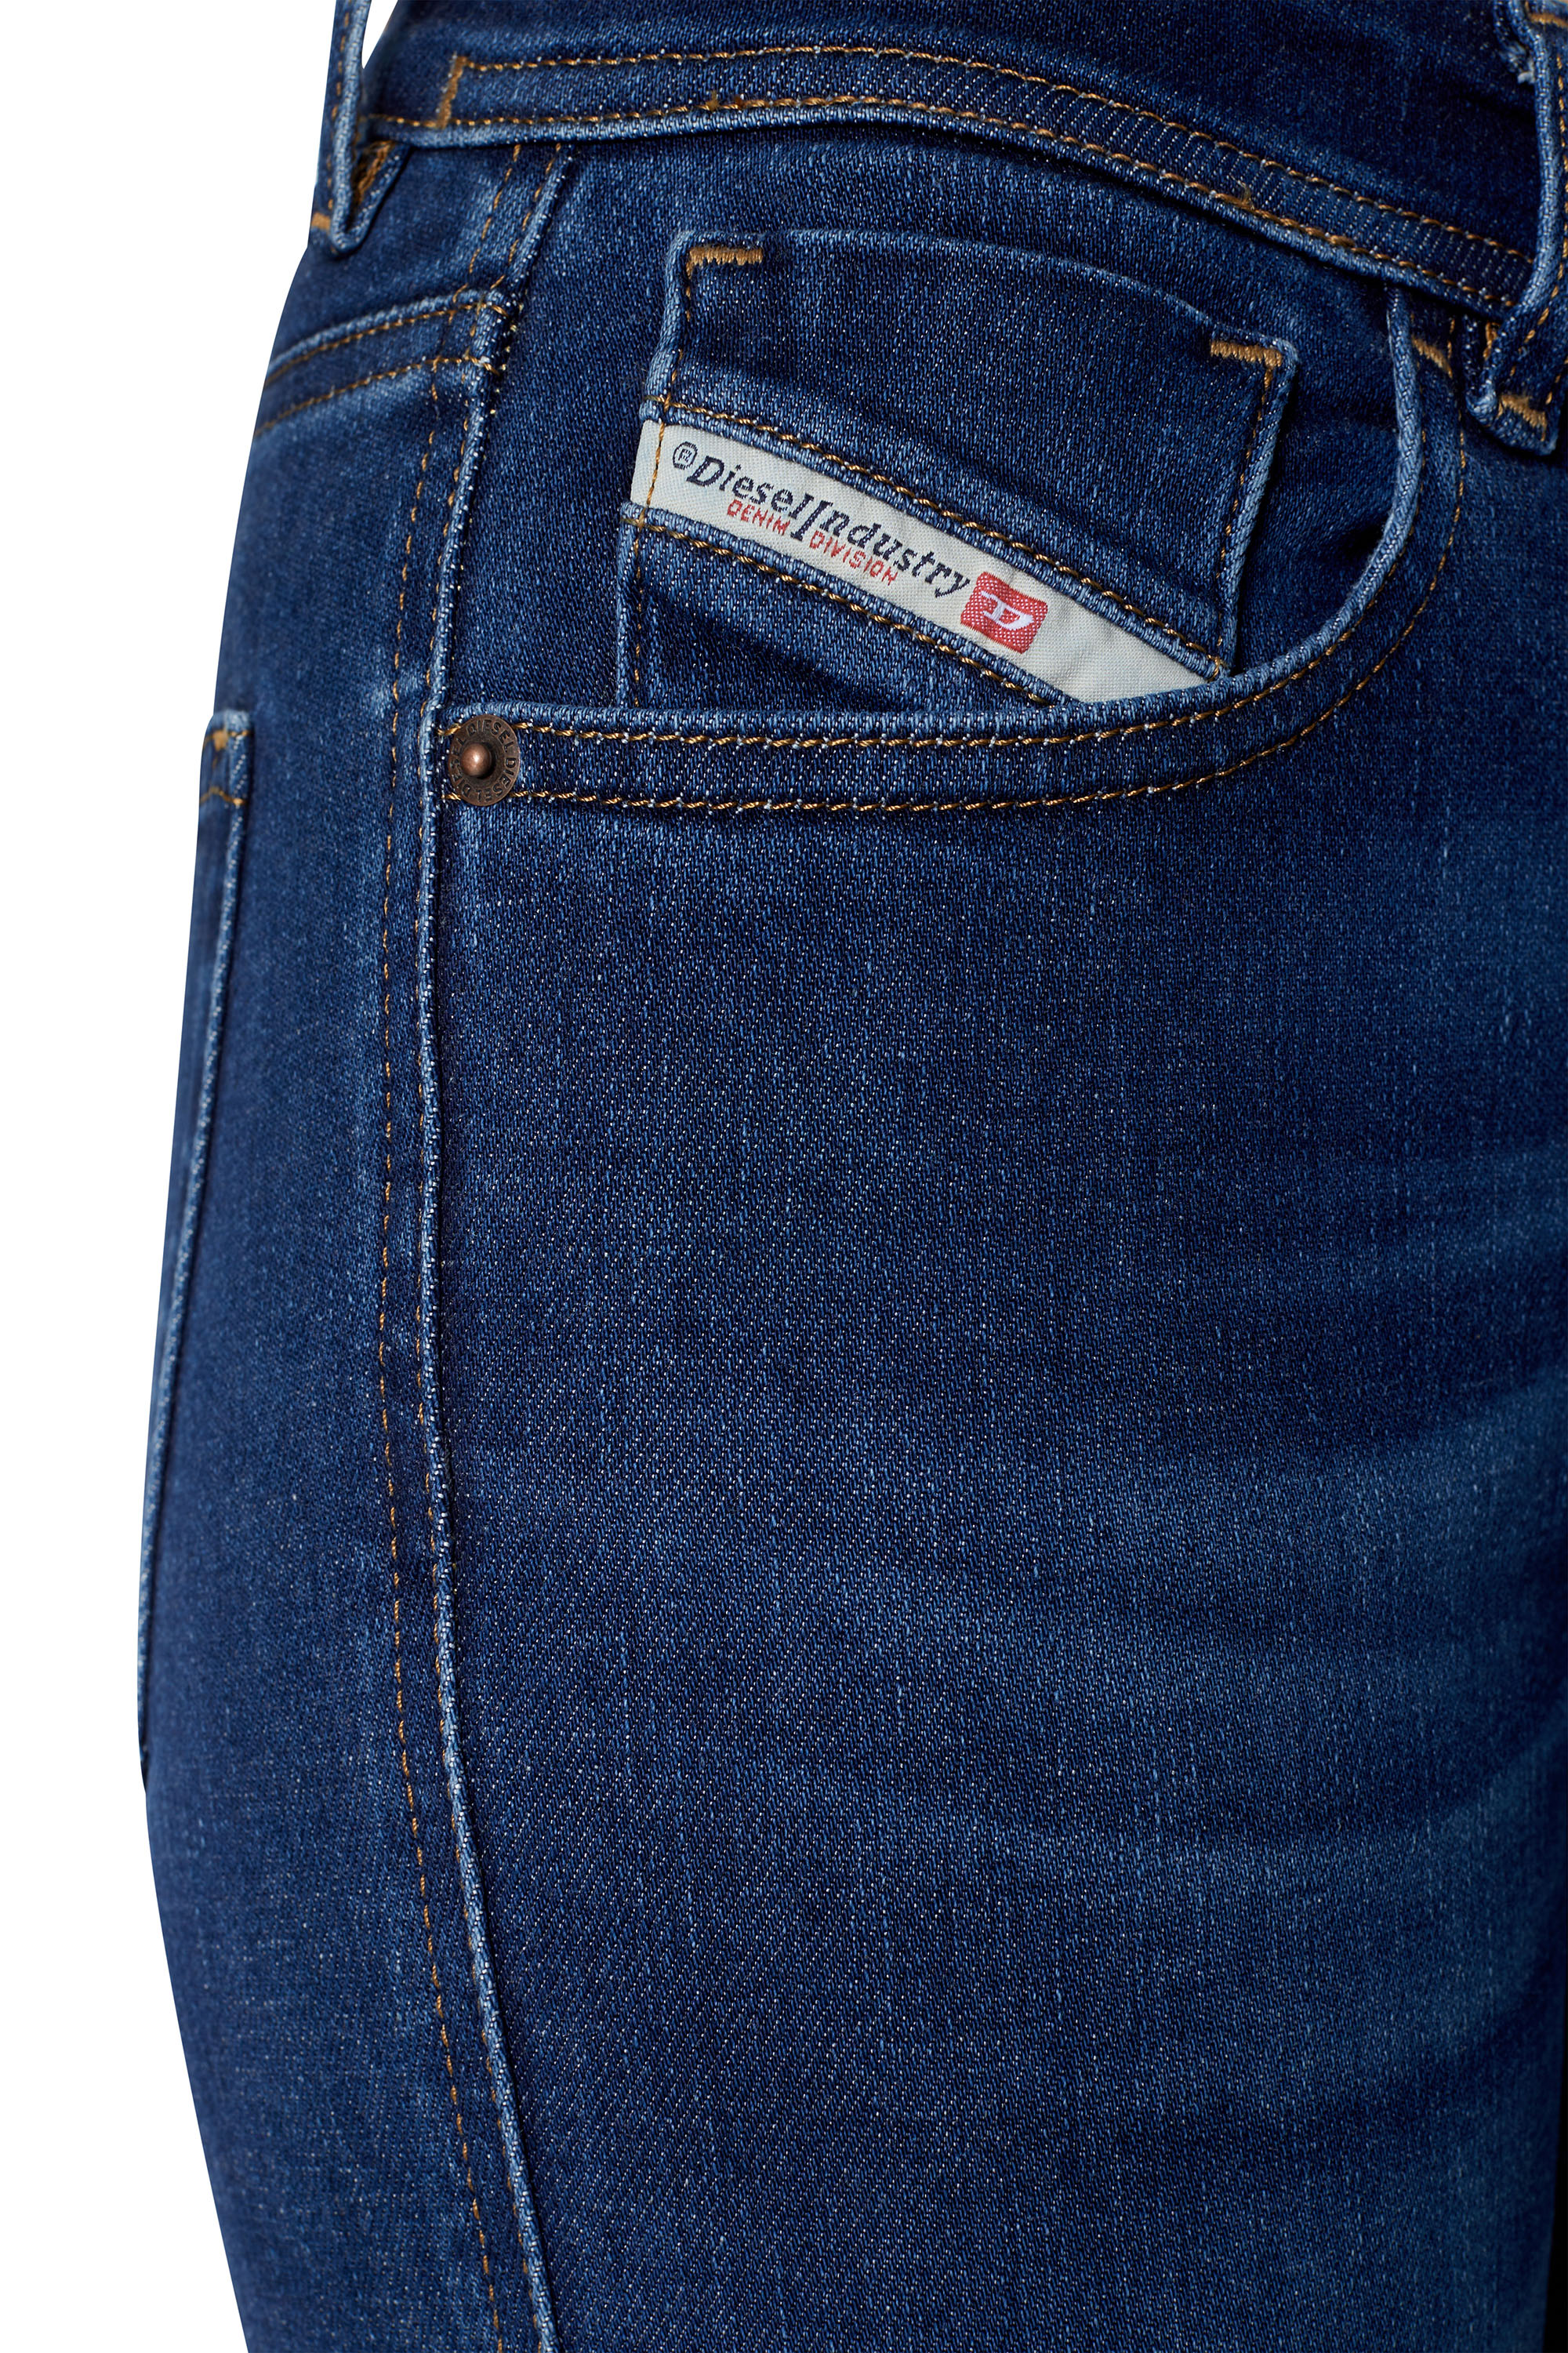 Diesel - Super skinny Jeans 2017 Slandy 09C19,  - Image 5